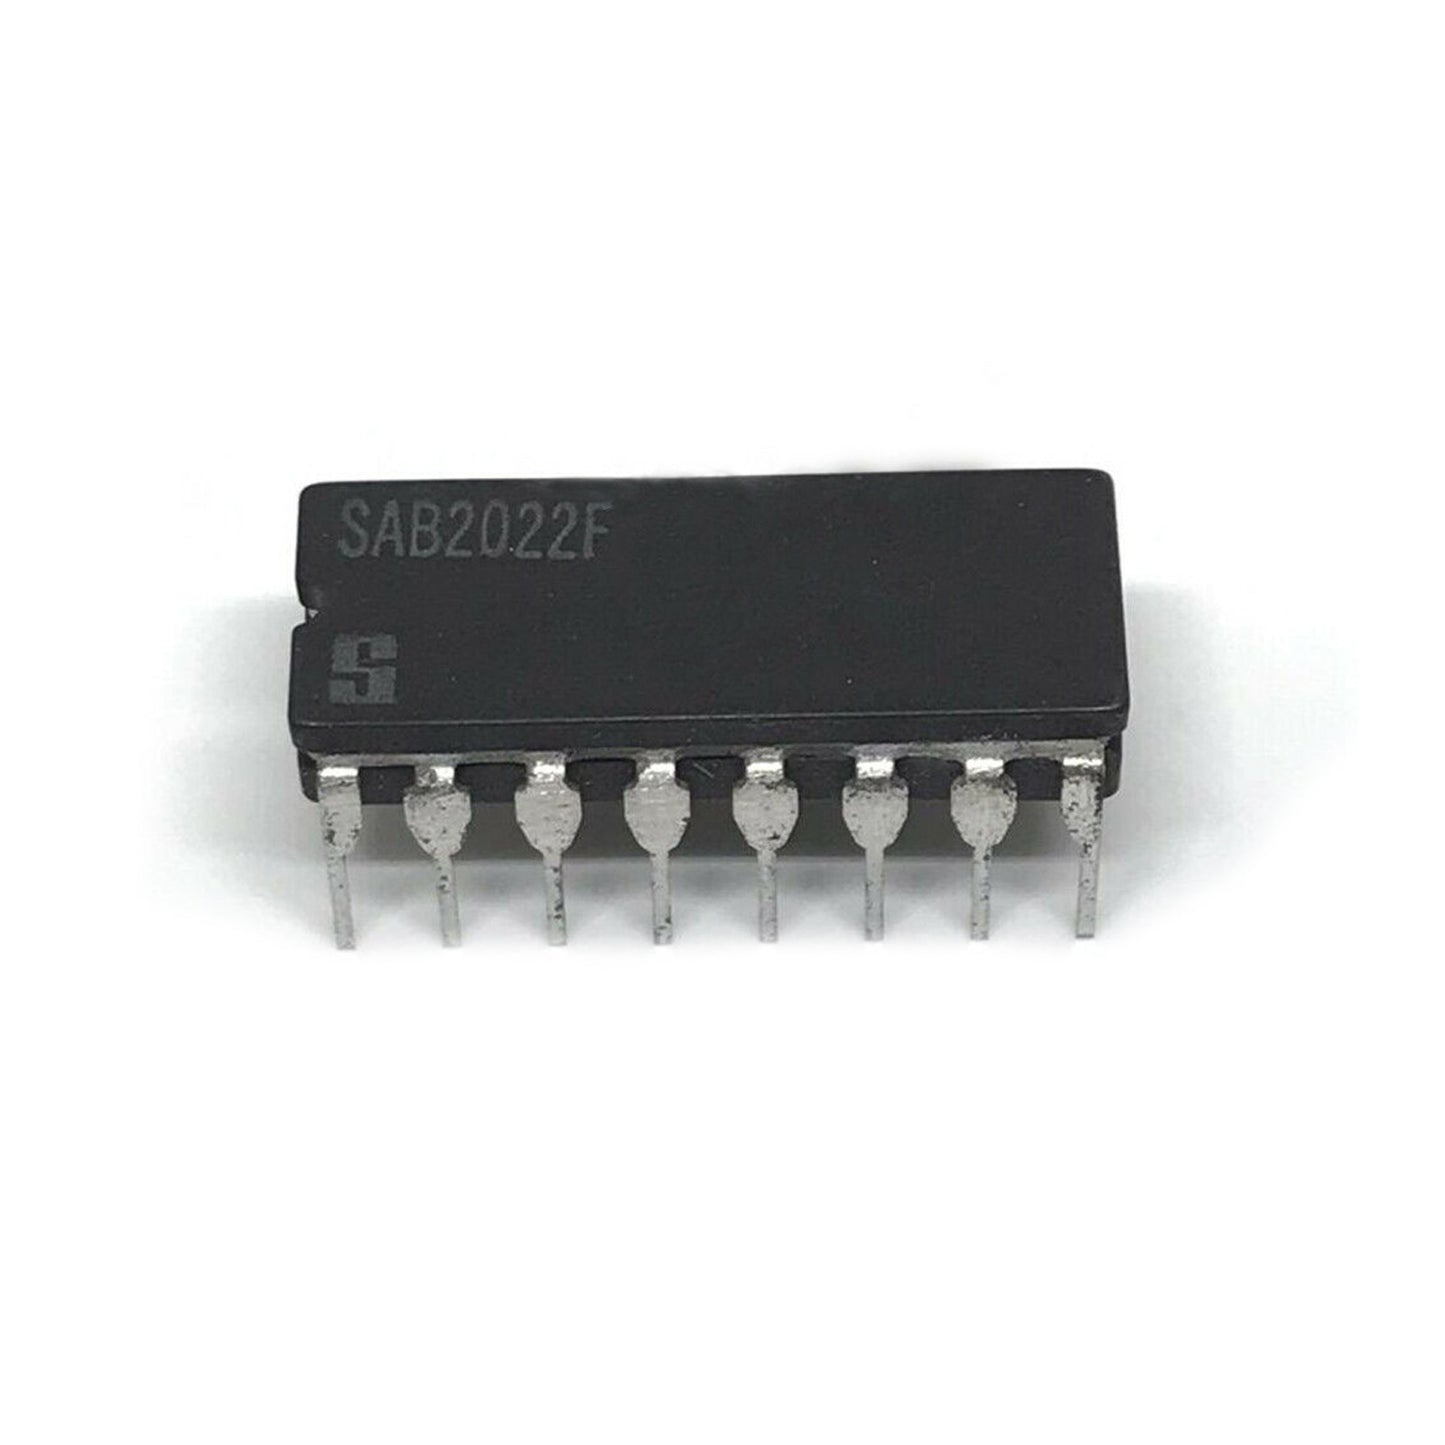 SAB2022F Componente elettronico, circuito integrato, transistor, 16 contatti